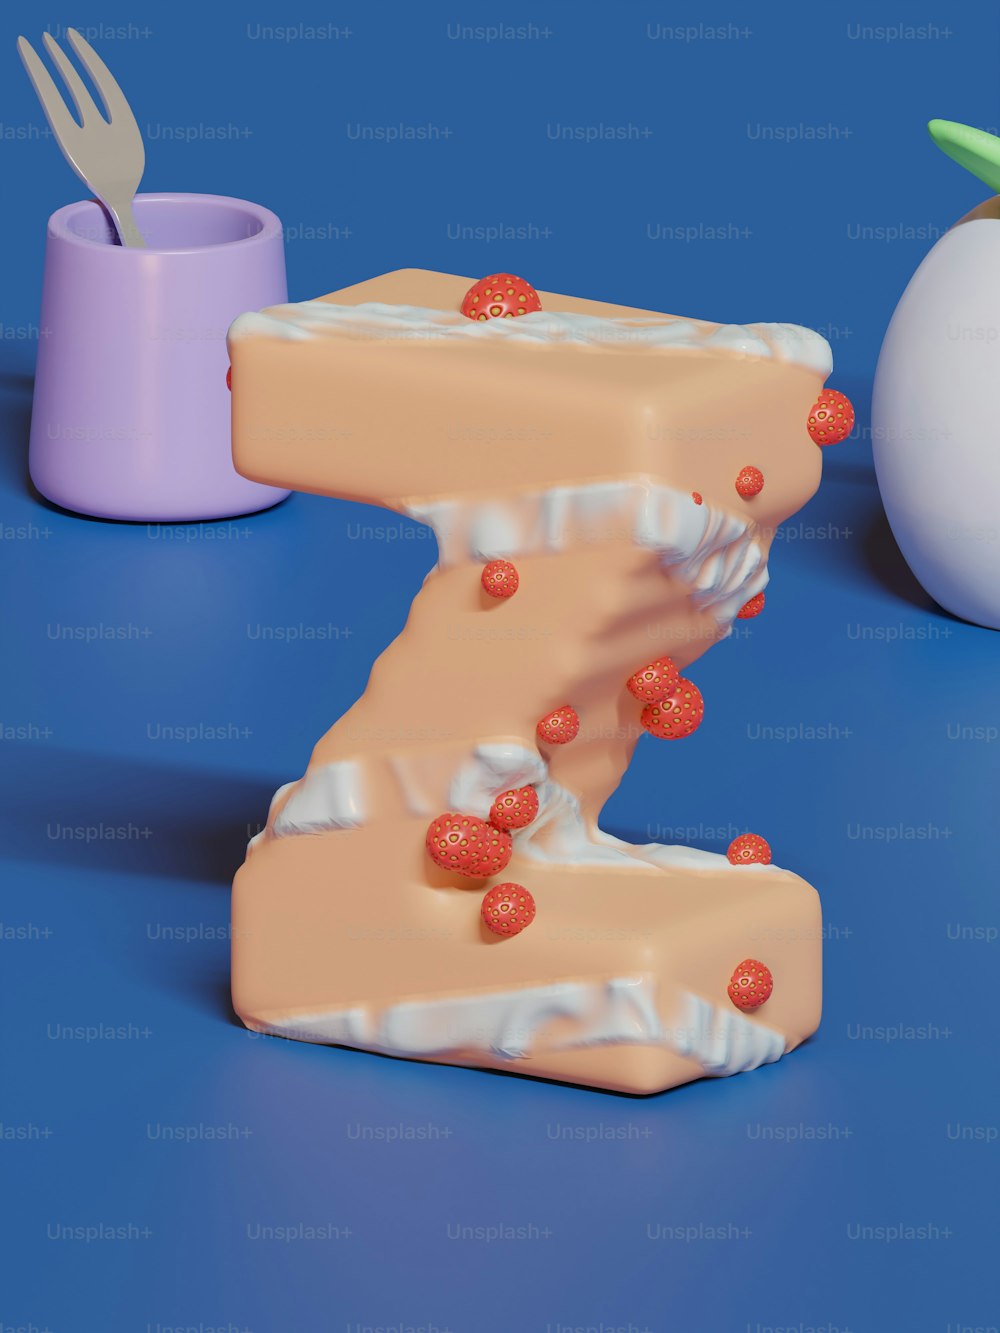 Un pastel con forma de la letra Z junto a un huevo